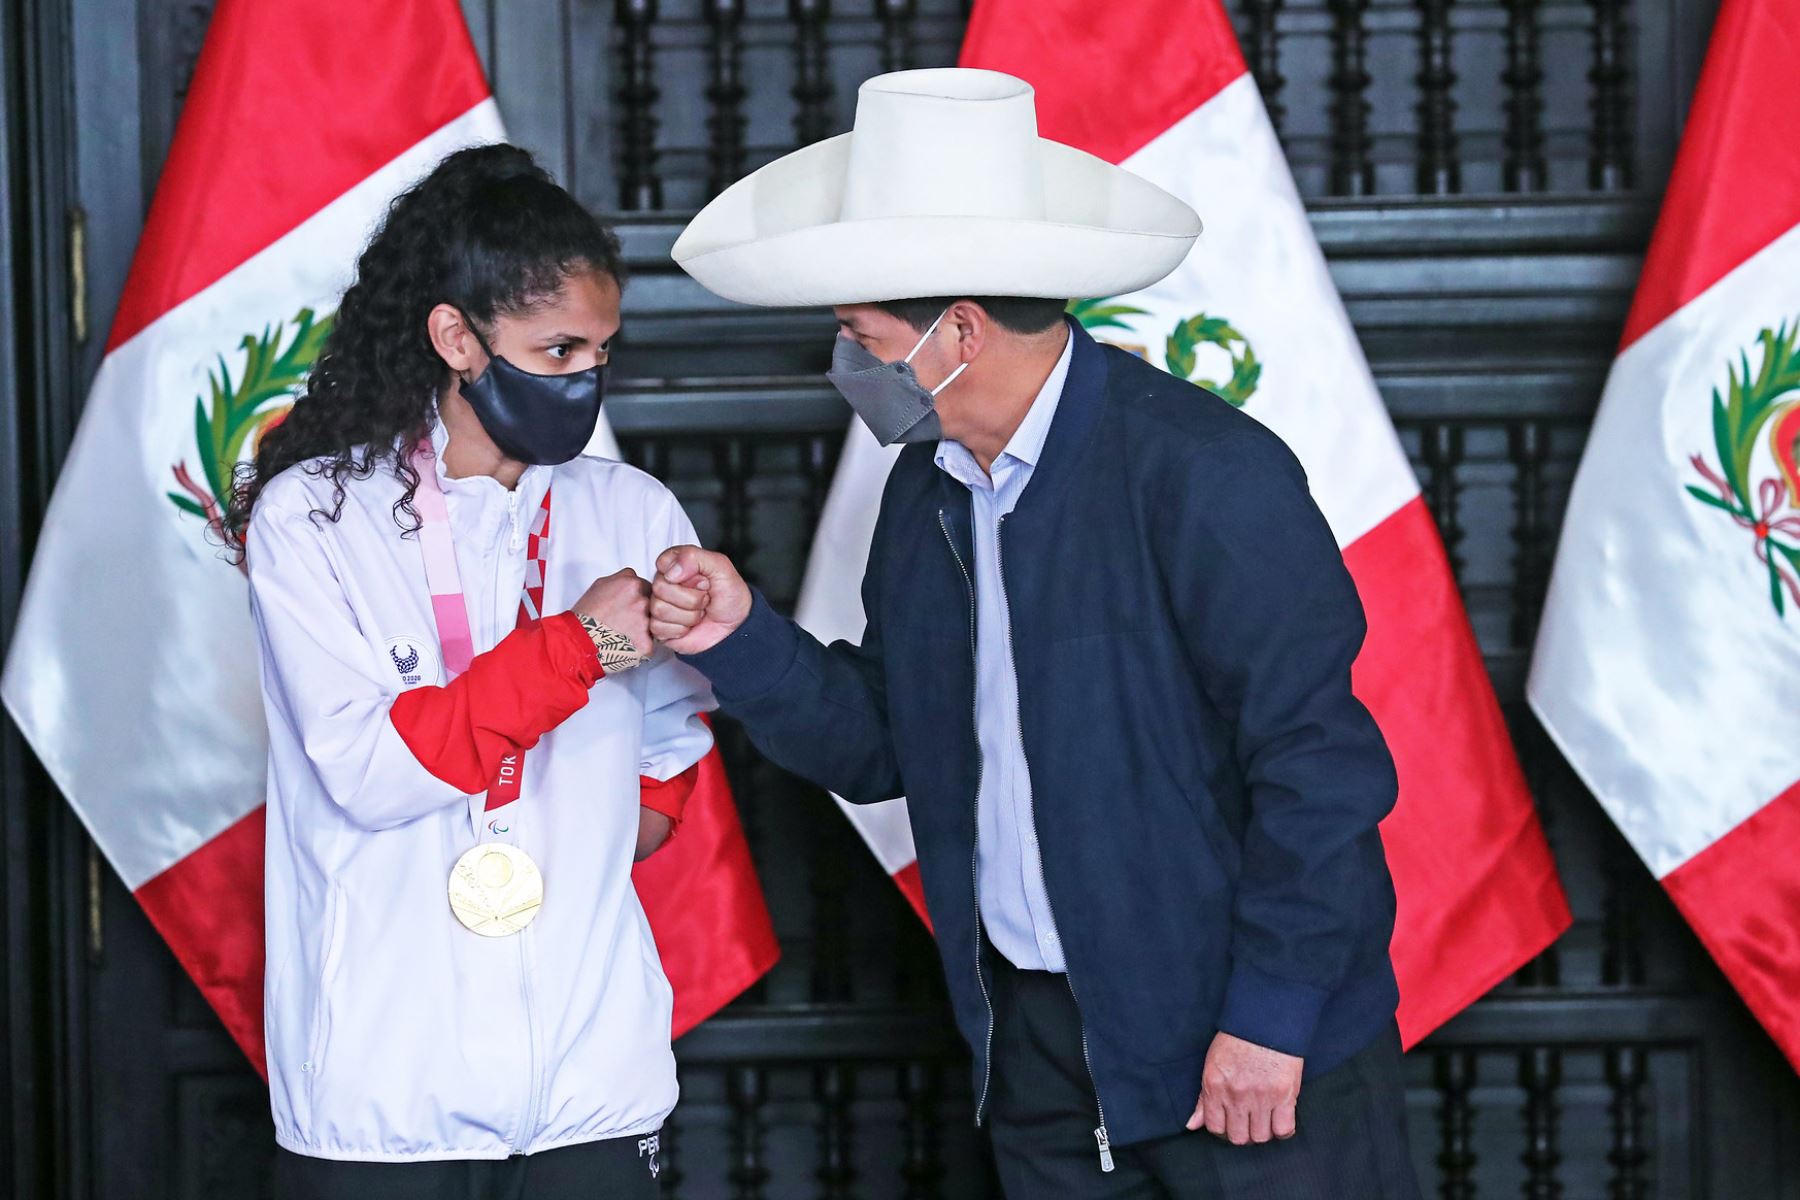 El Presidente de la República, Pedro Castillo, participó en la ceremonia de reconocimiento y premiación de la paradeportista Angélica Espinoza, medallista de oro en la disciplina de taekwondo, en los Juegos Paralímpicos de Tokio. Foto: Prensa Presidencia